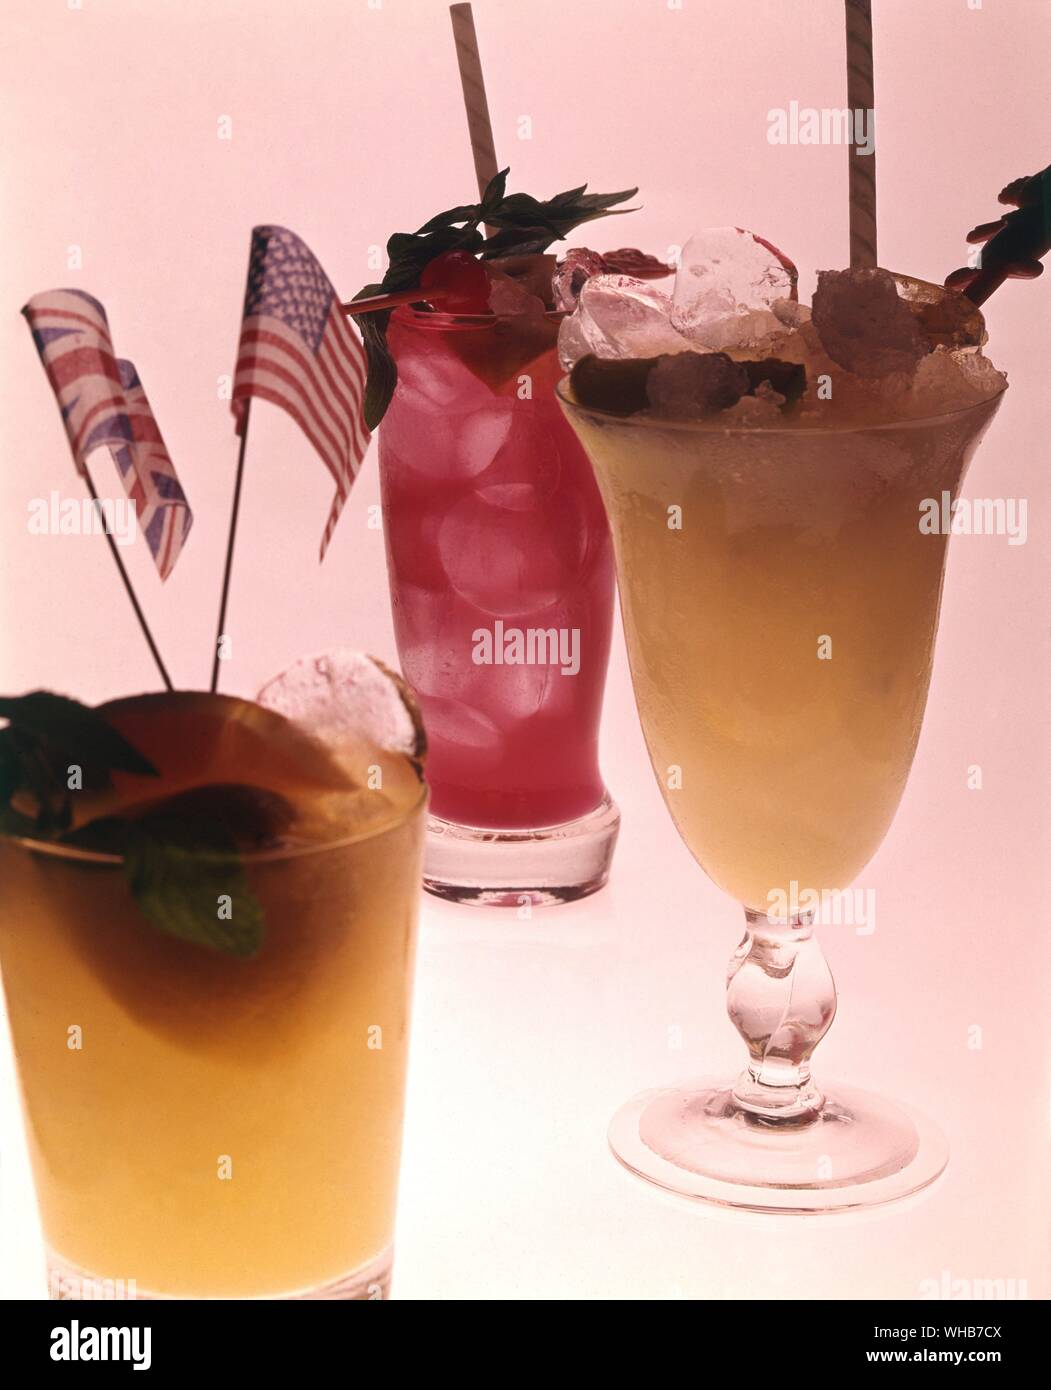 Alkoholische Getränke in Gläsern. Stockfoto